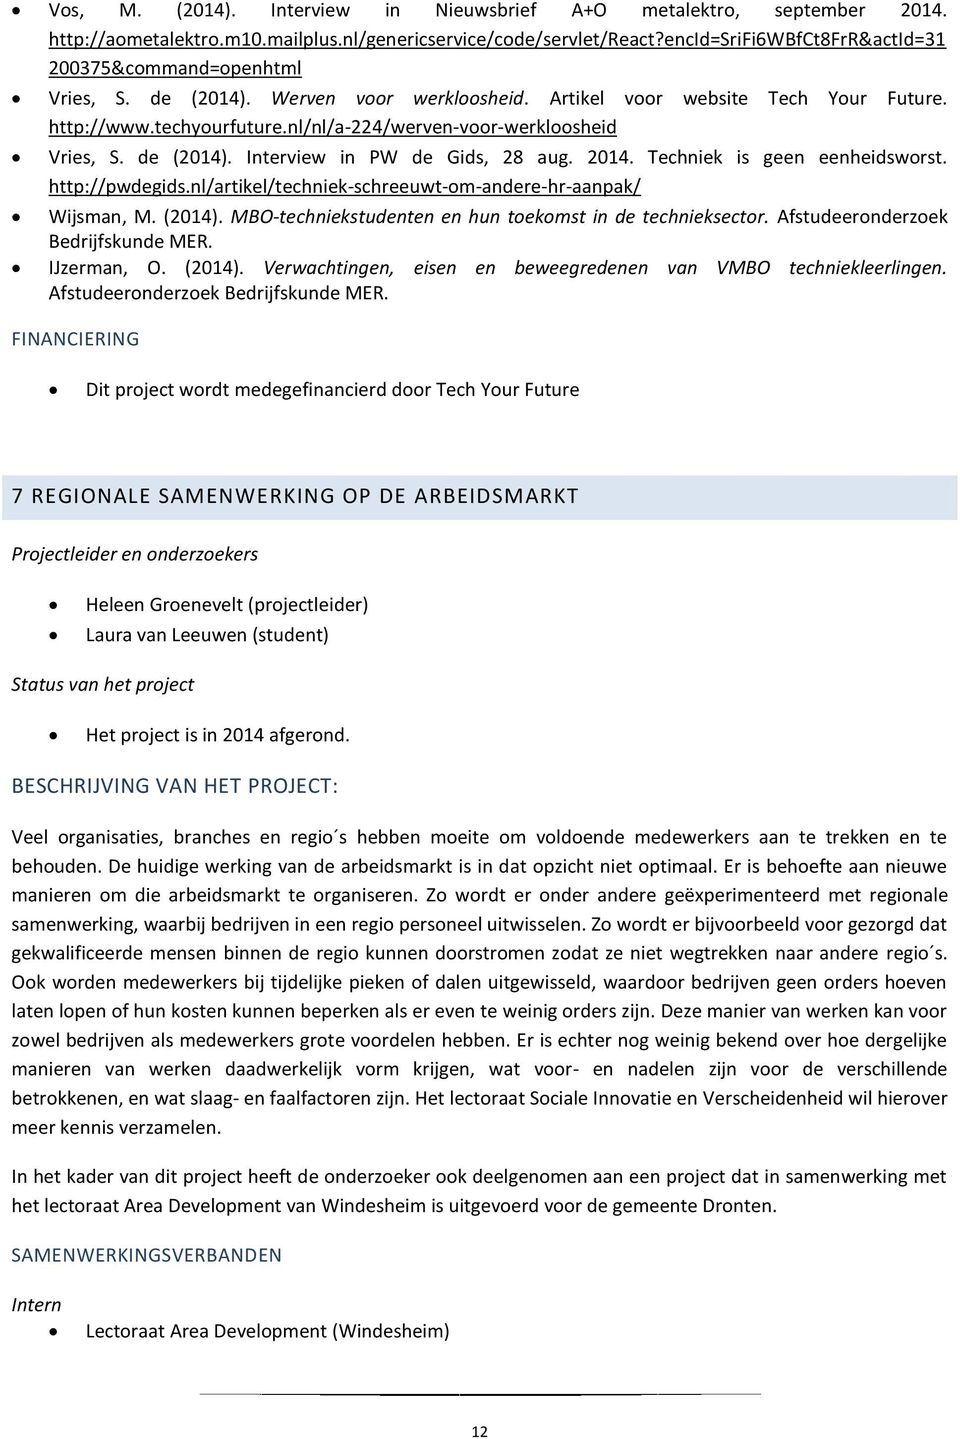 nl/nl/a-224/werven-voor-werkloosheid Vries, S. de (2014). Interview in PW de Gids, 28 aug. 2014. Techniek is geen eenheidsworst. http://pwdegids.